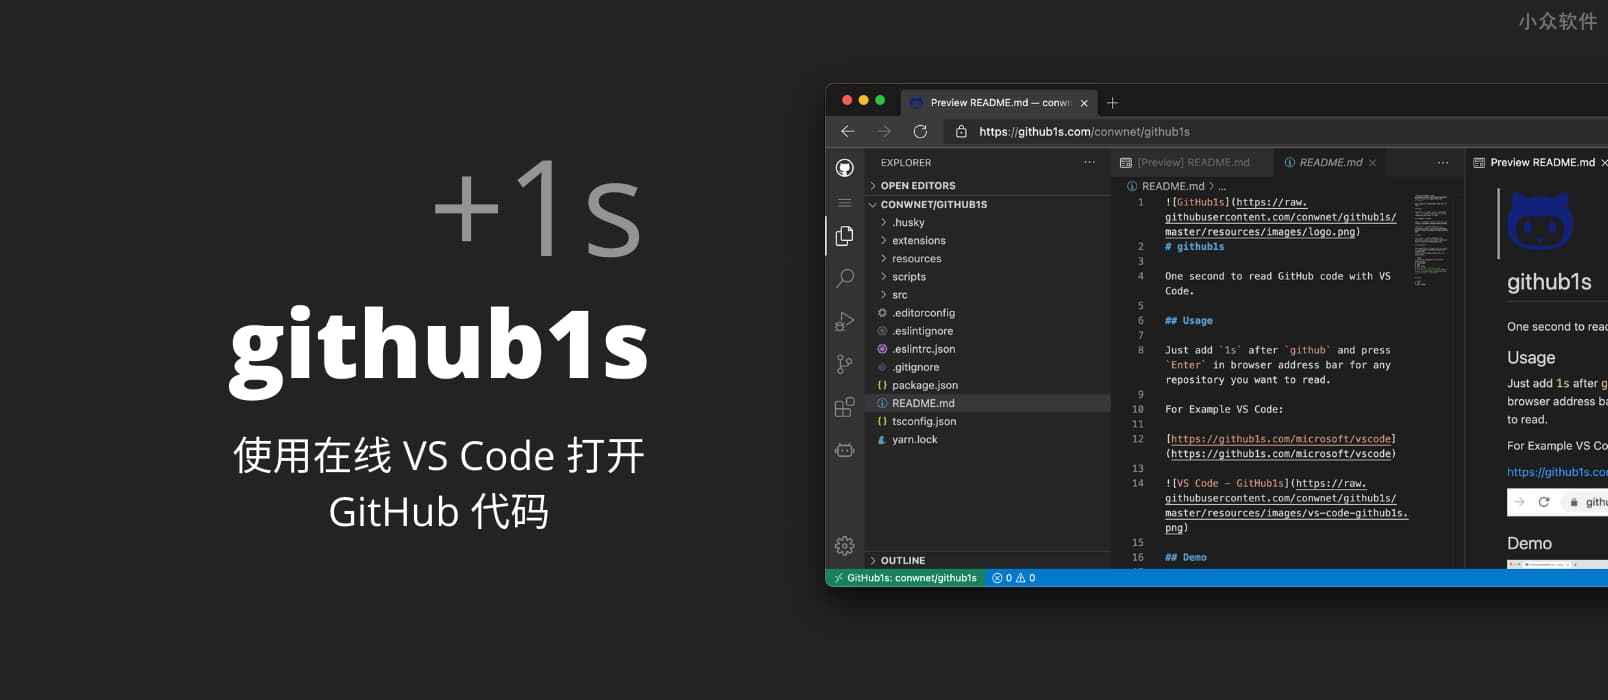 github1s – 为 GitHub +1s，使用在线 VS Code 打开 GitHub 上的代码